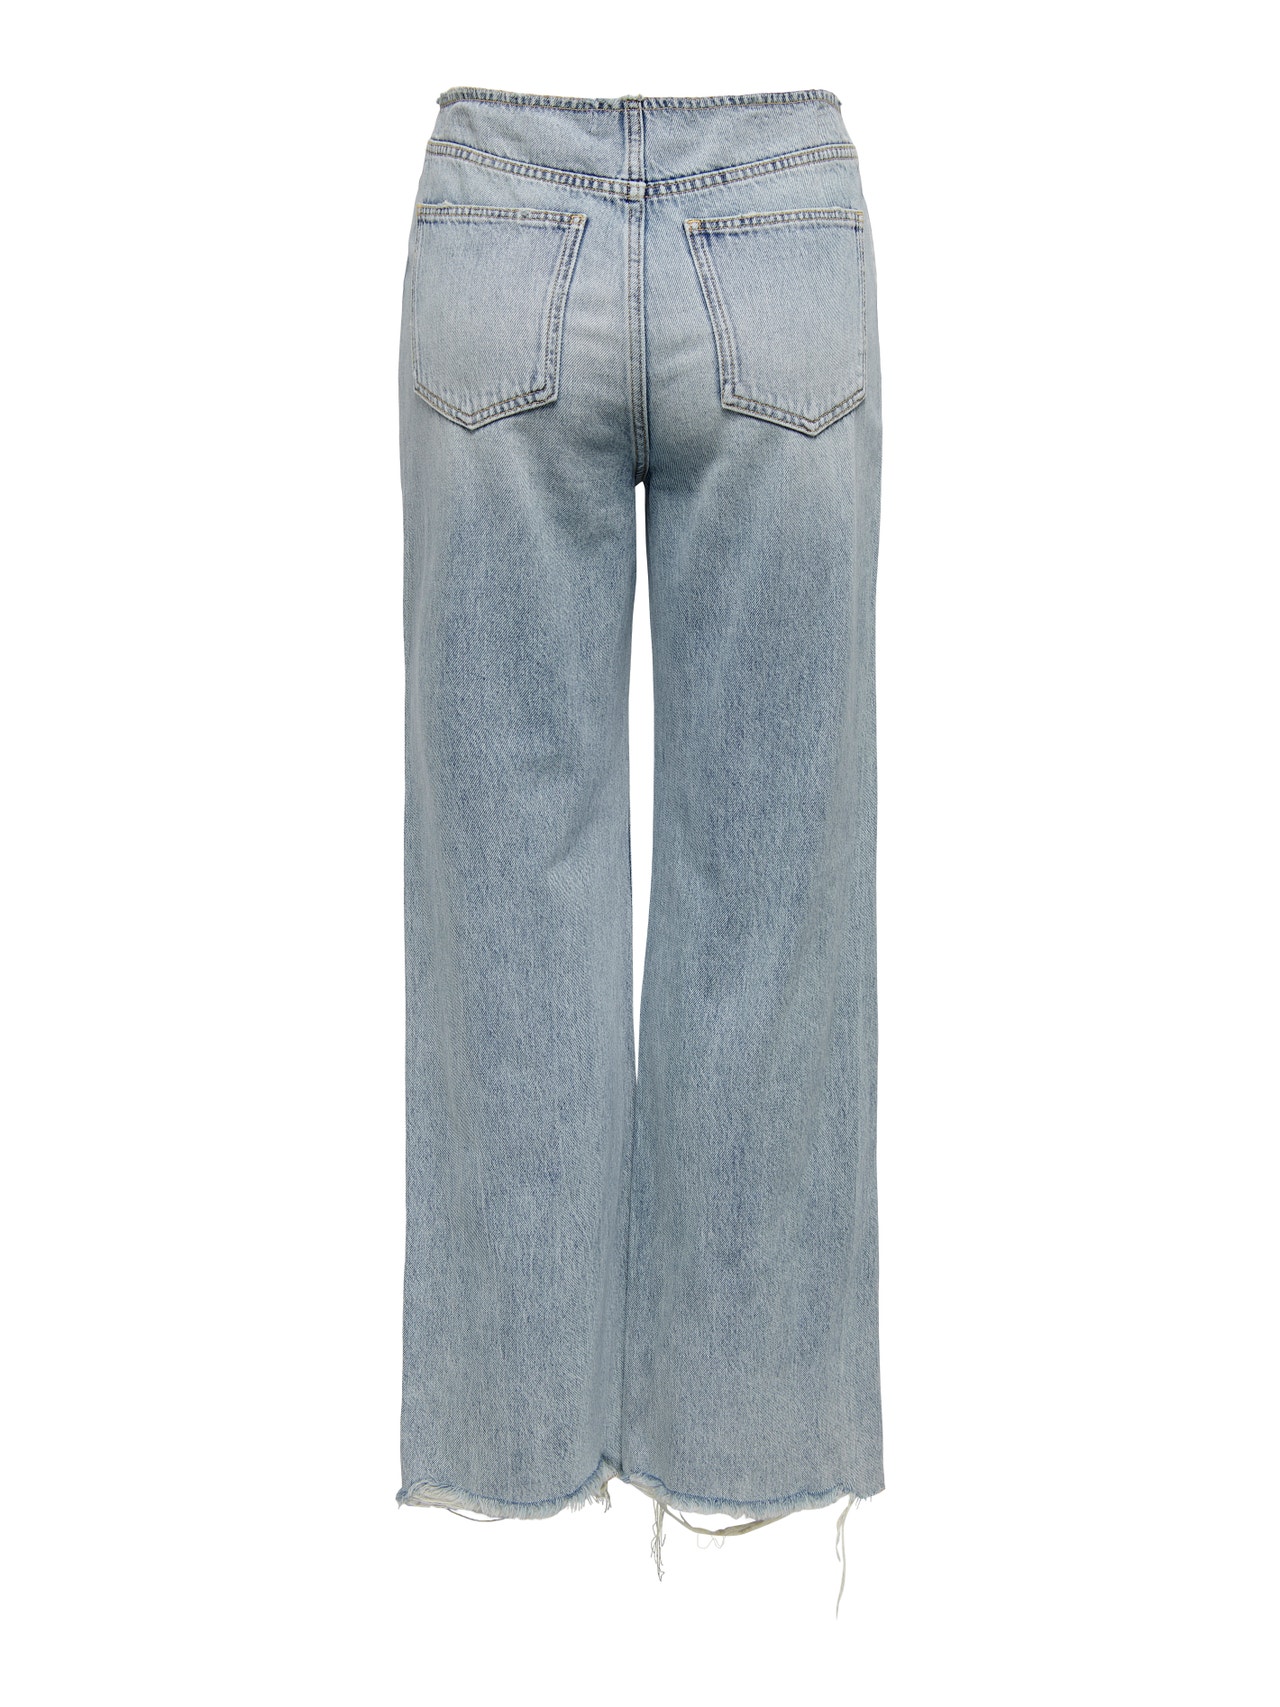 ONLY Wide Leg Fit High waist Destroyed hems Jeans -Medium Blue Denim - 15283250